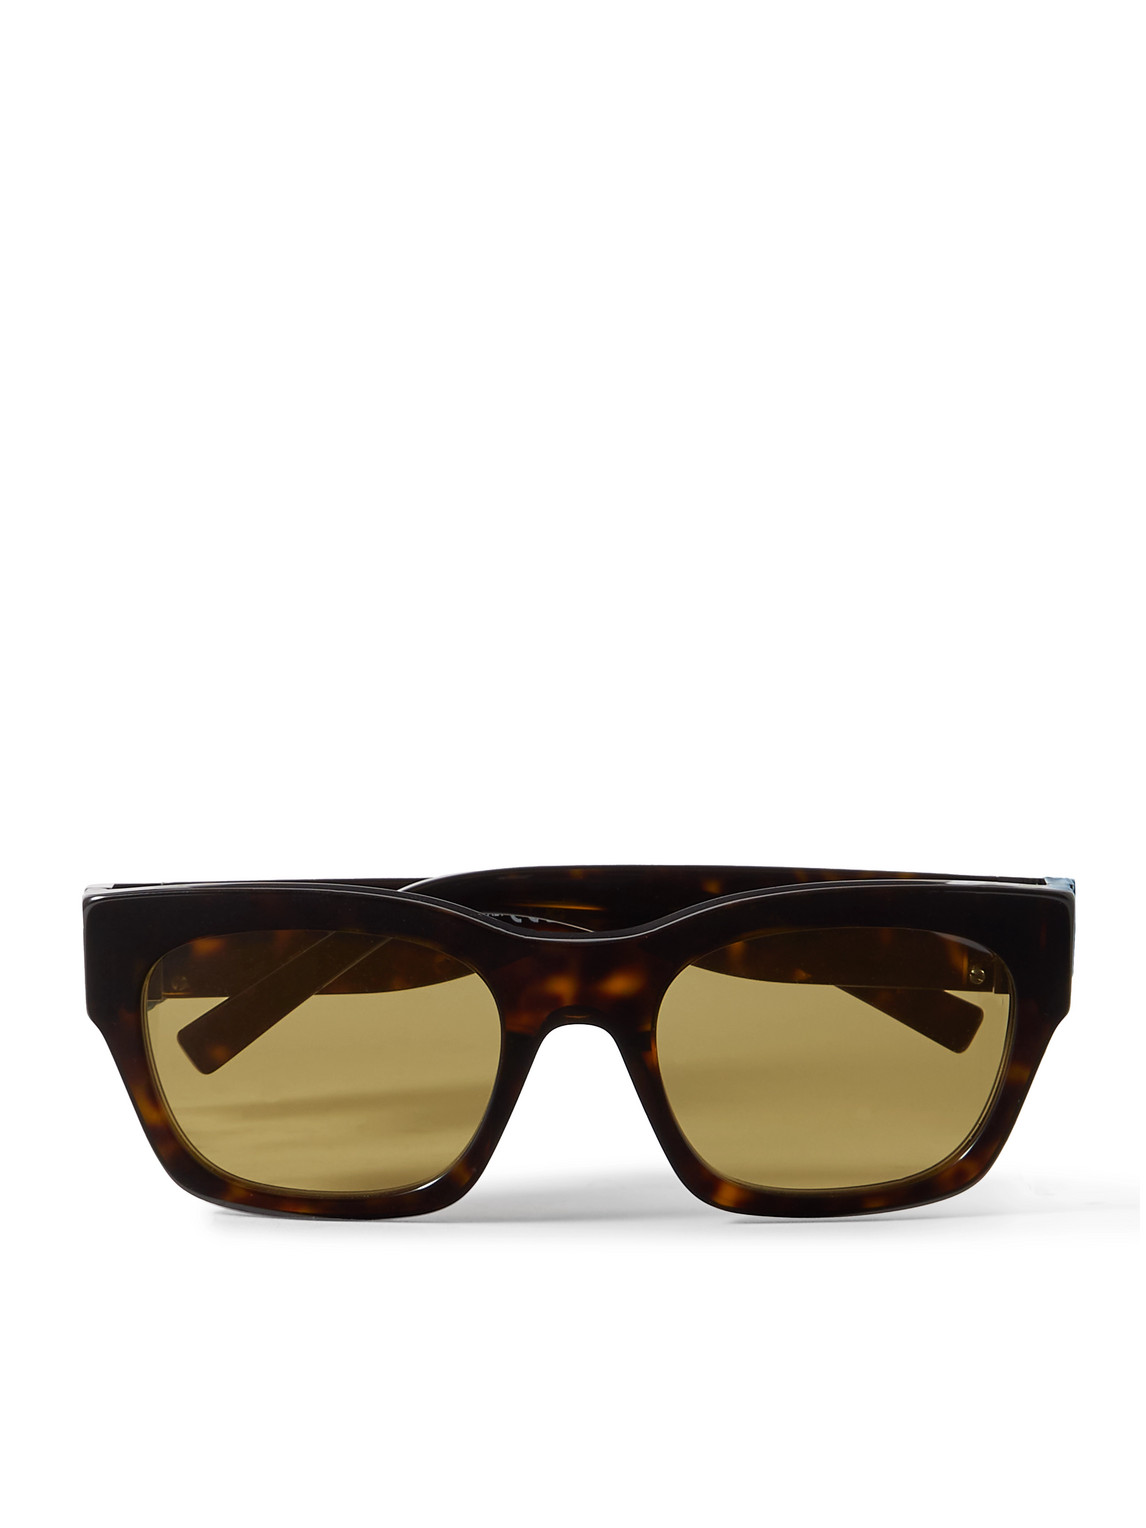 4G D-Frame Tortoiseshell Acetate Sunglasses